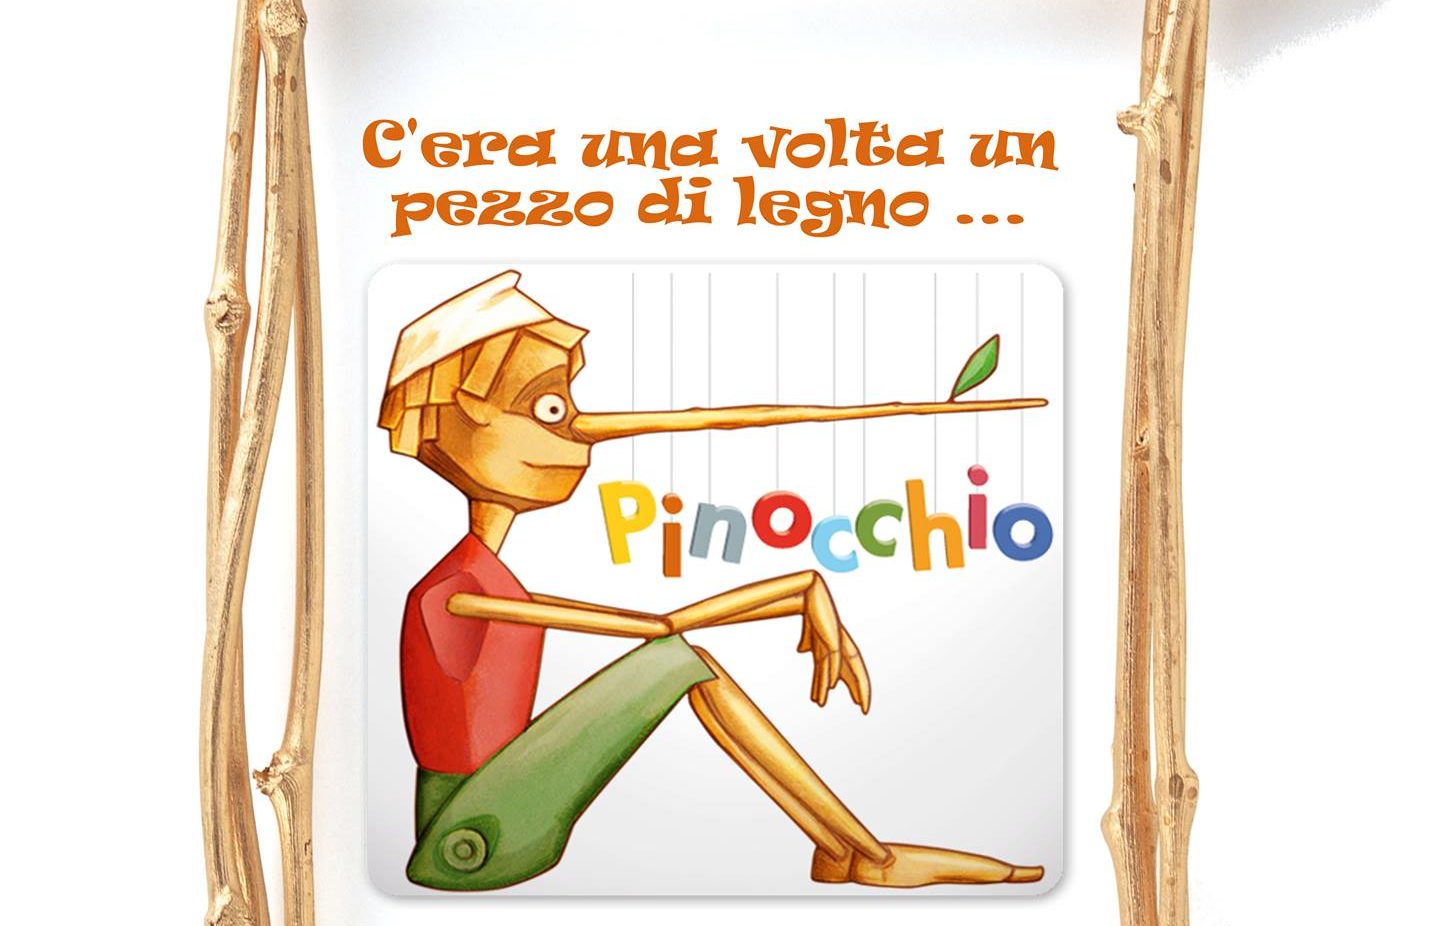 20 Febbraio – Pinocchio